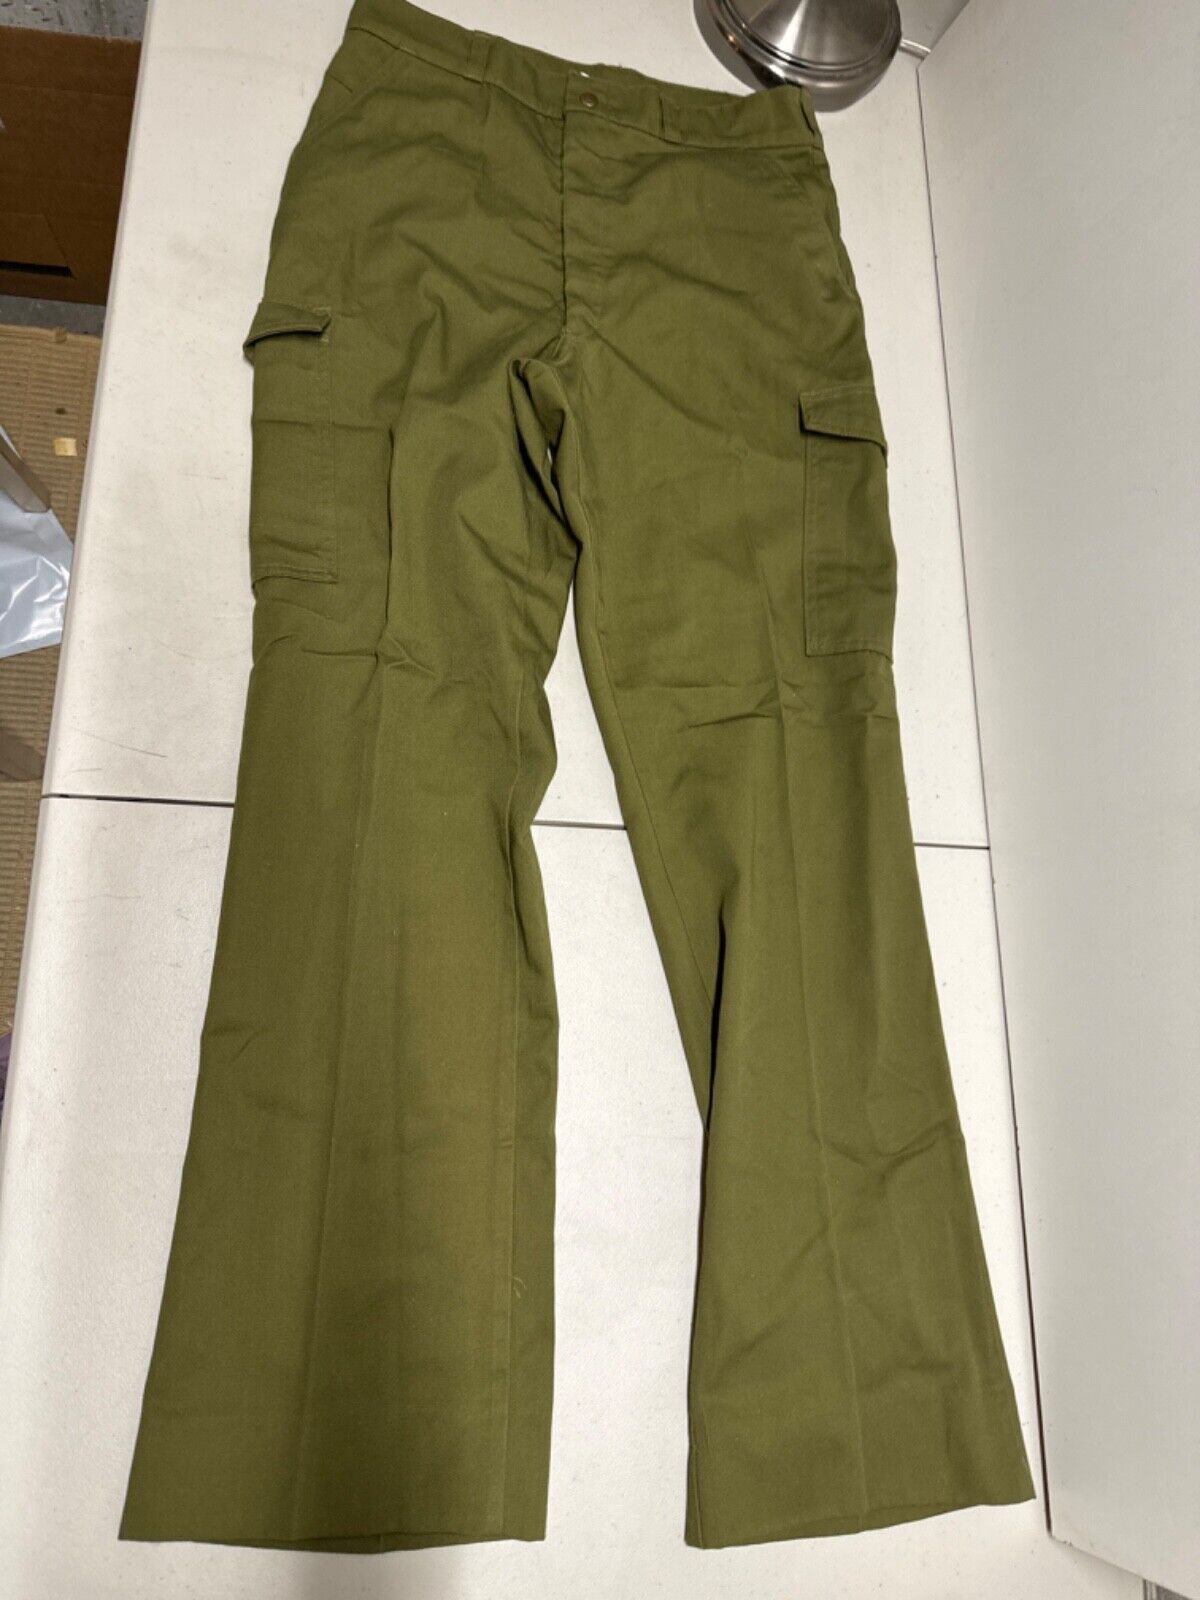 Vintage Boy Scout Cargo Uniform Pants 36